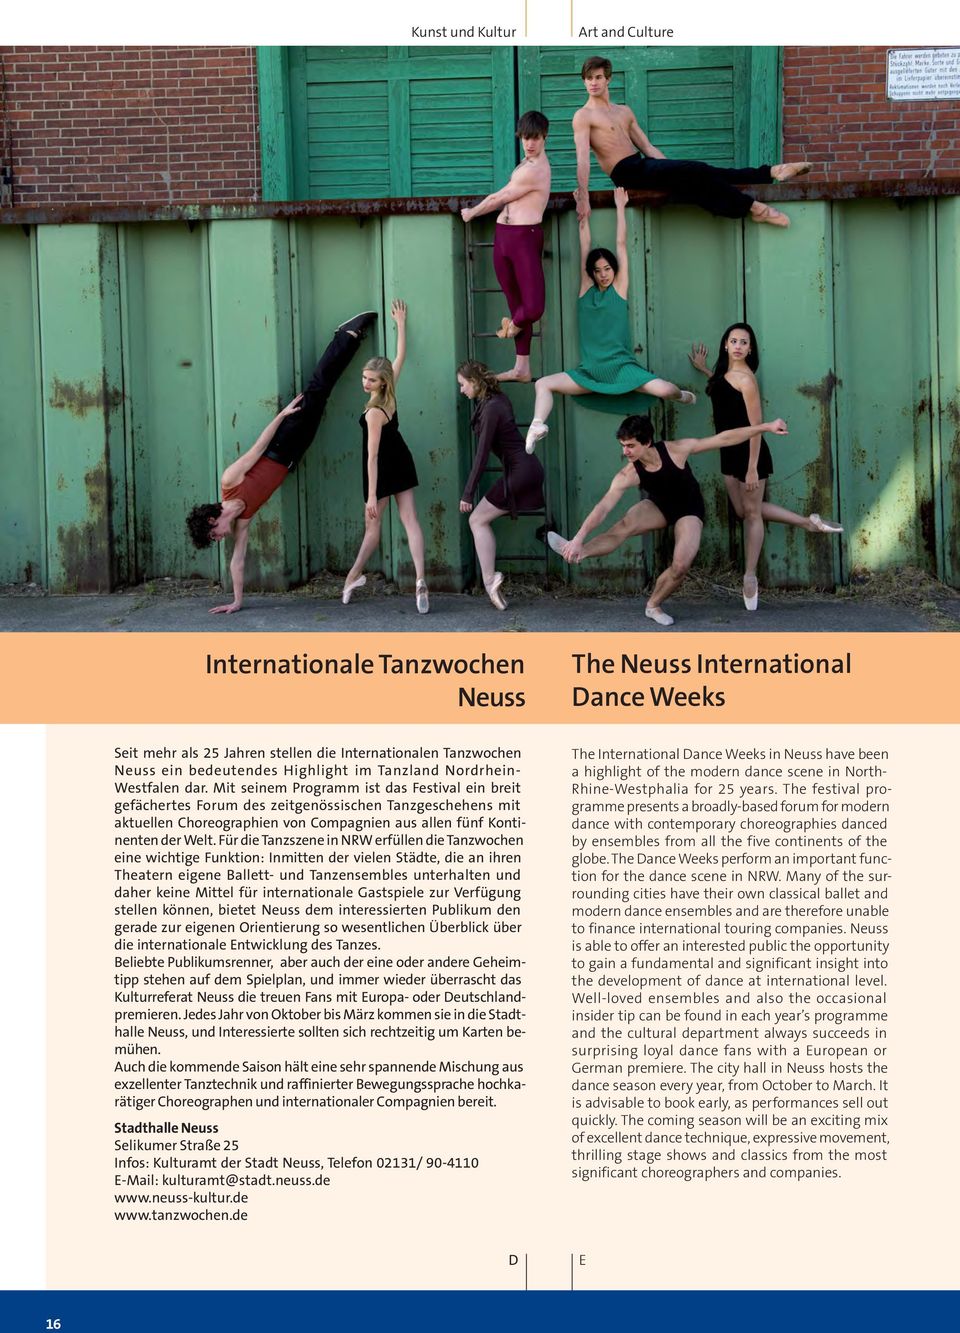 Mit seinem Programm ist das Festival ein breit gefächertes Forum des zeitgenössischen Tanzgeschehens mit aktuellen Choreographien von Compagnien aus allen fünf Kontinenten der Welt.